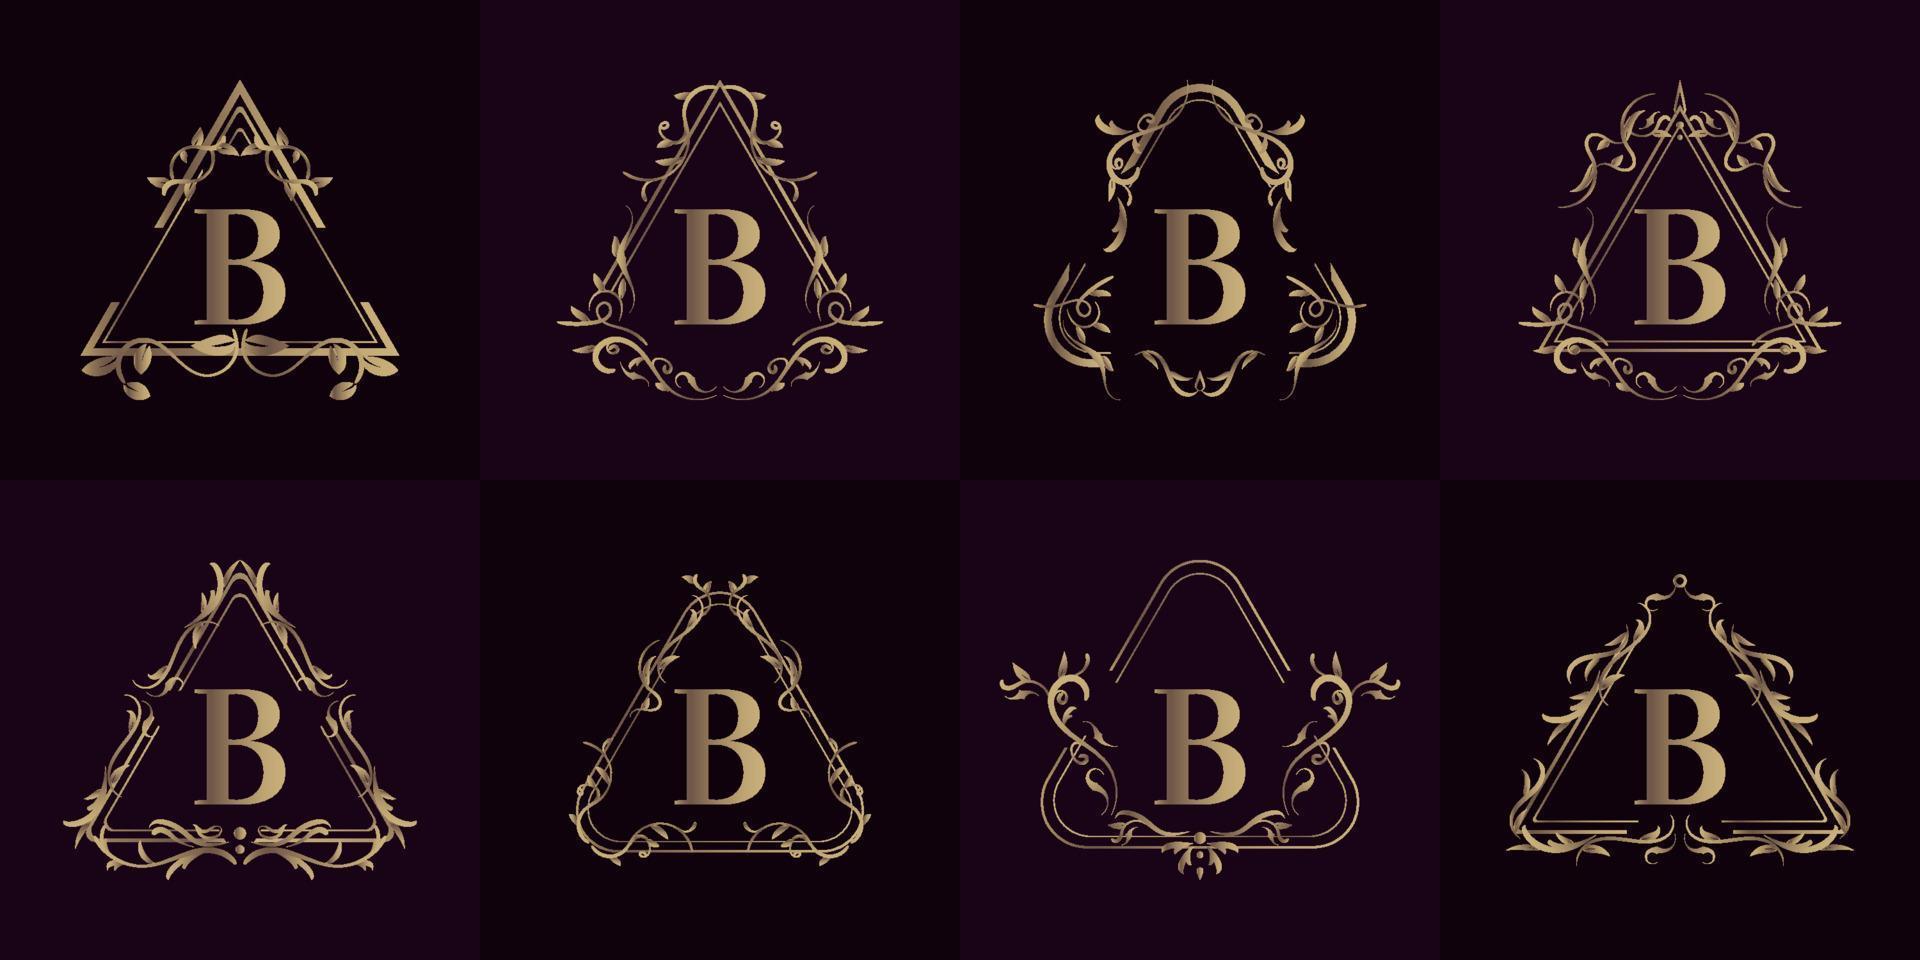 verzameling van logo initial b met luxe ornament of bloemenframe vector